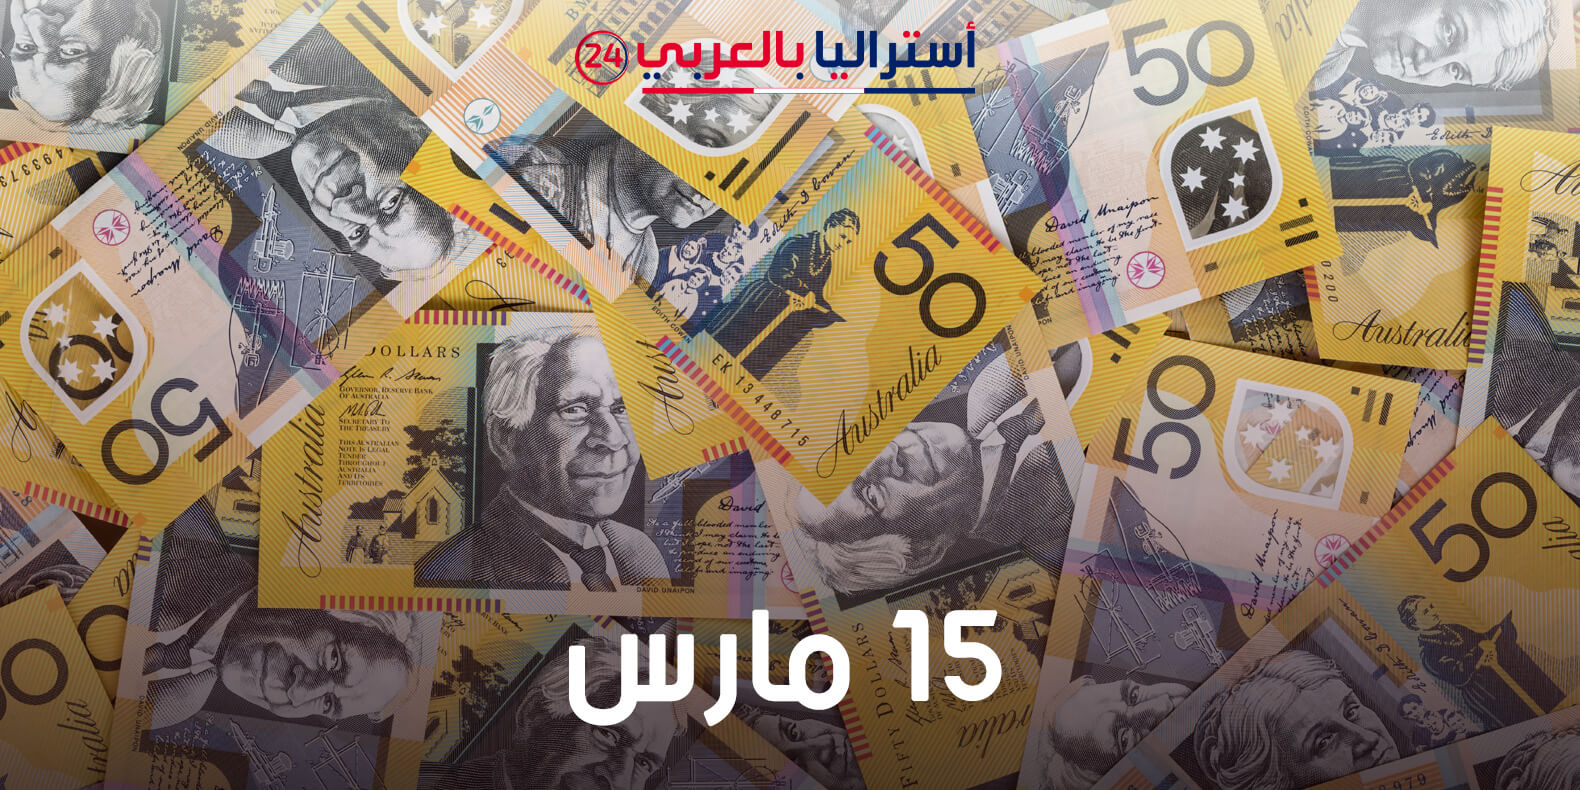 سعر الدولار الاسترالي اليوم مقابل العملات العالمية والعربية 15 مارس